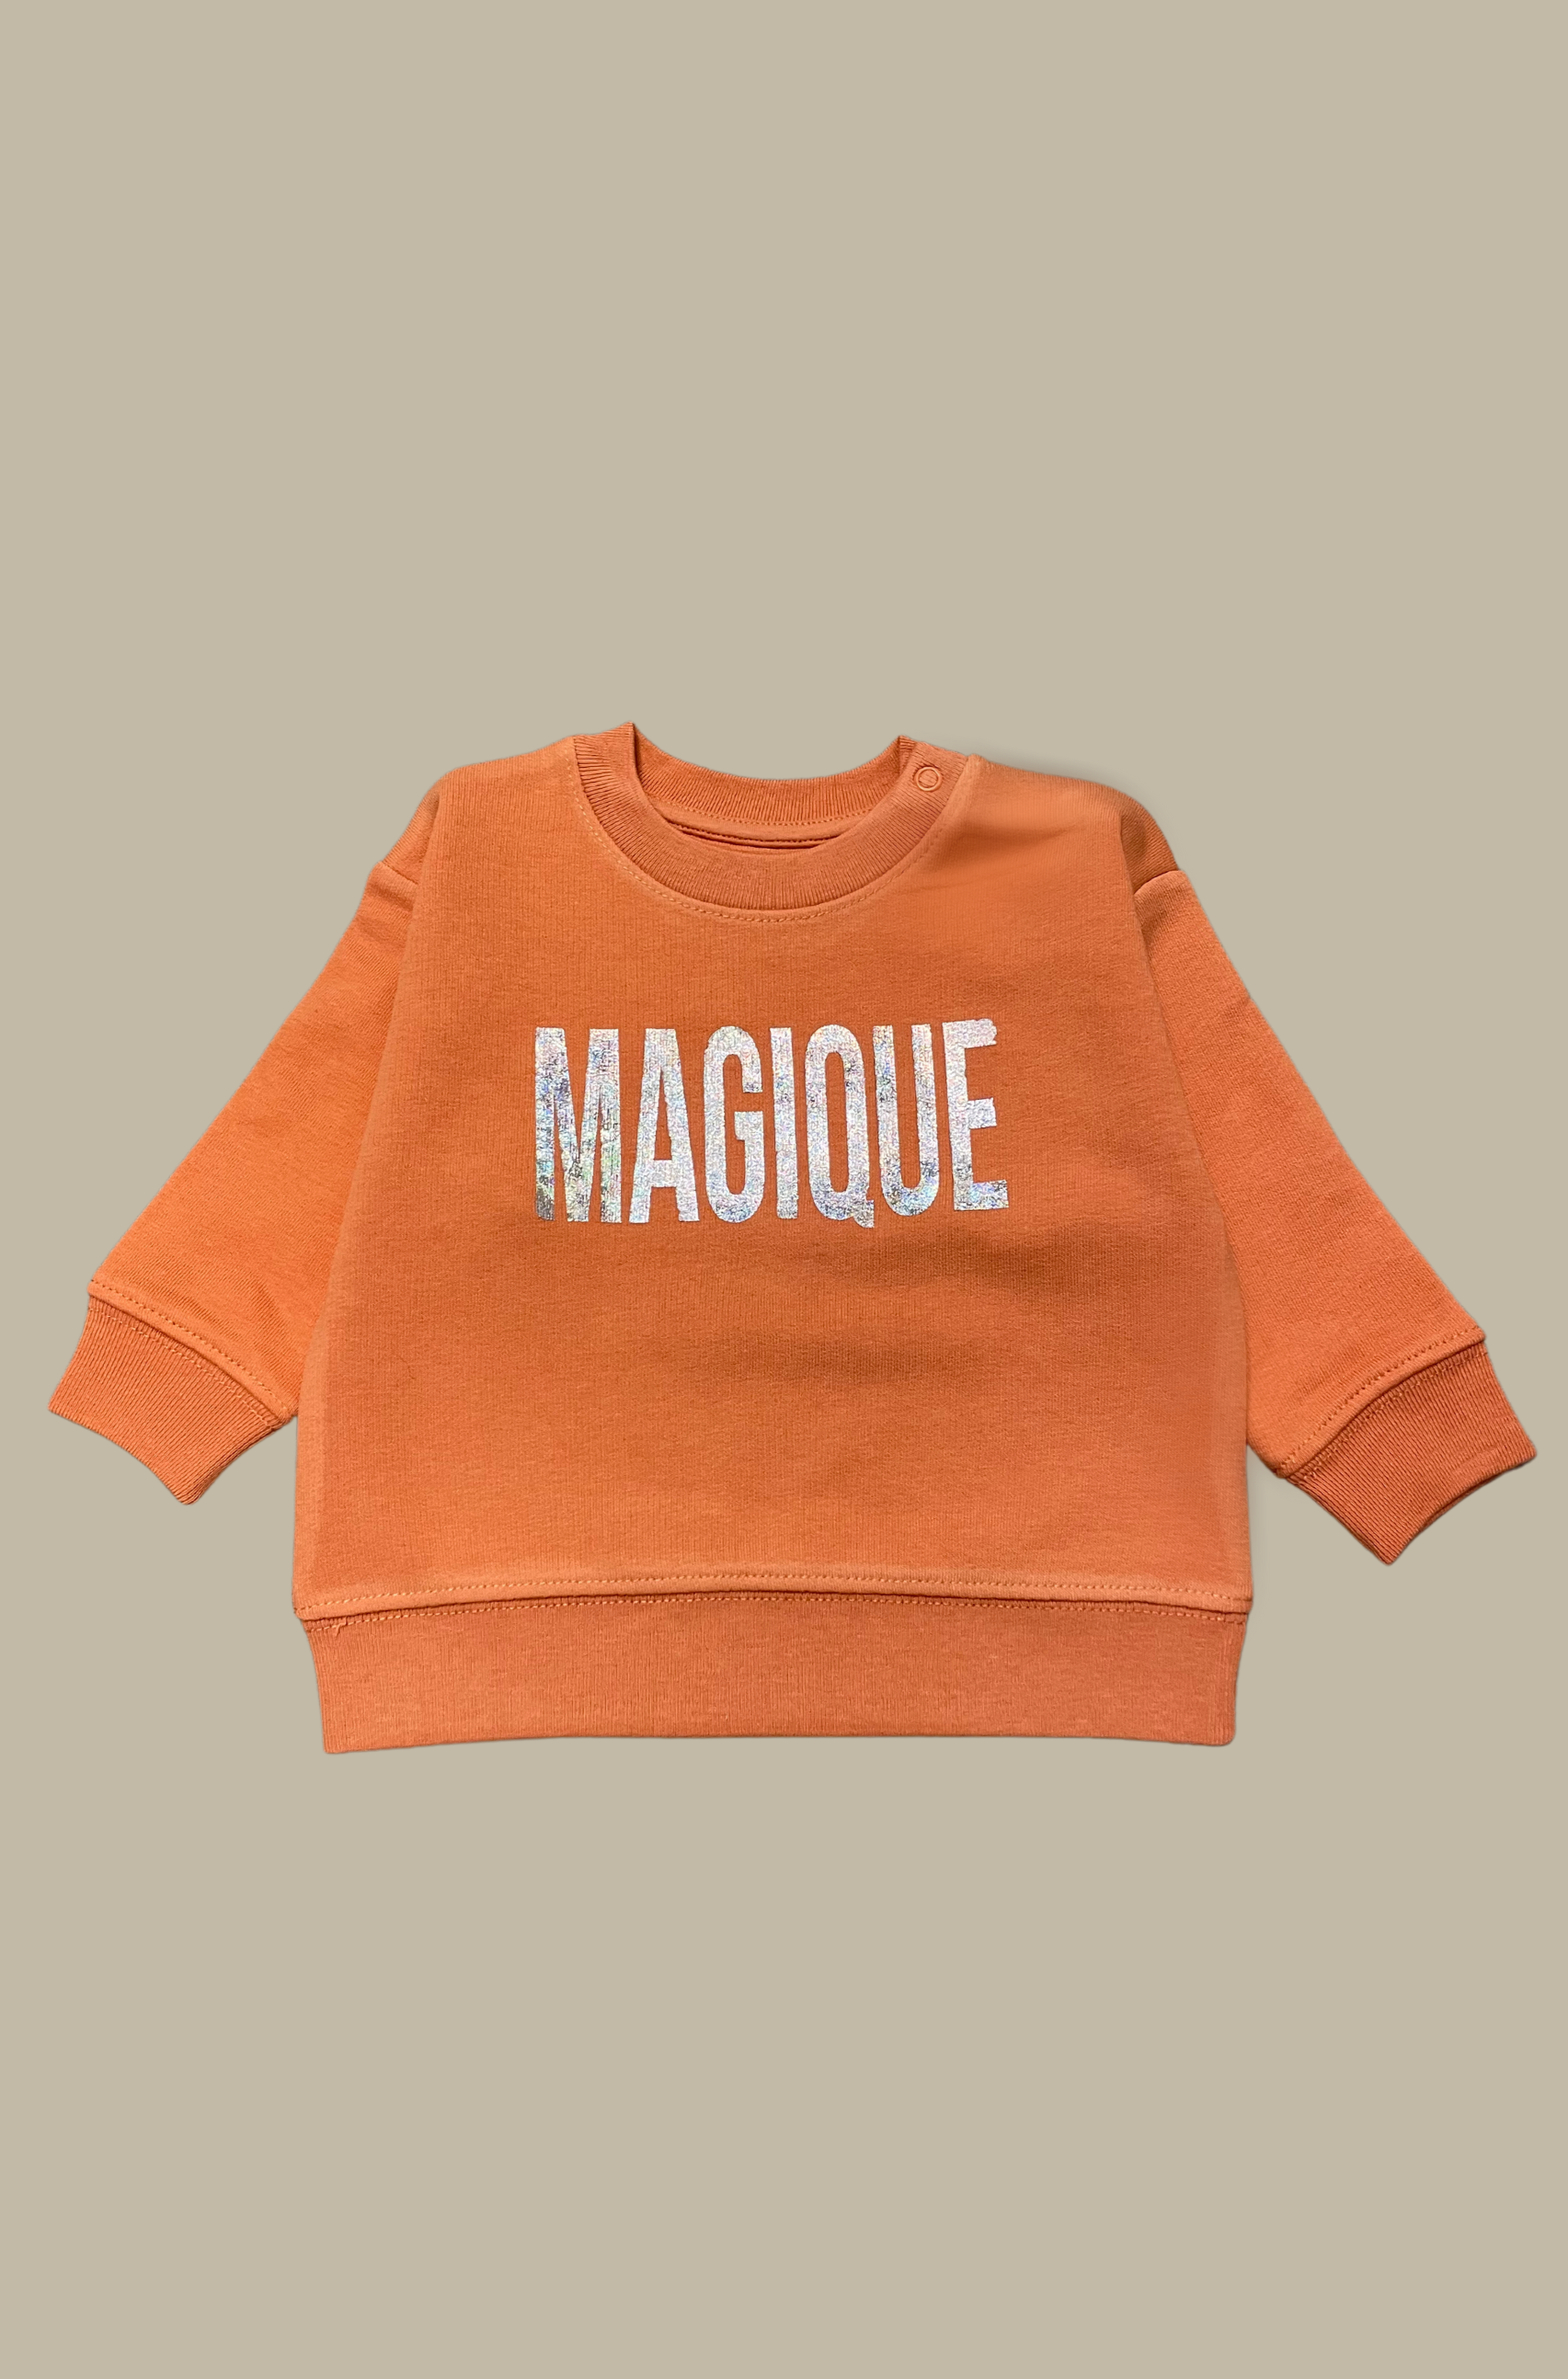 Bébé Magique Sweatshirt - Koralle / Konfetti